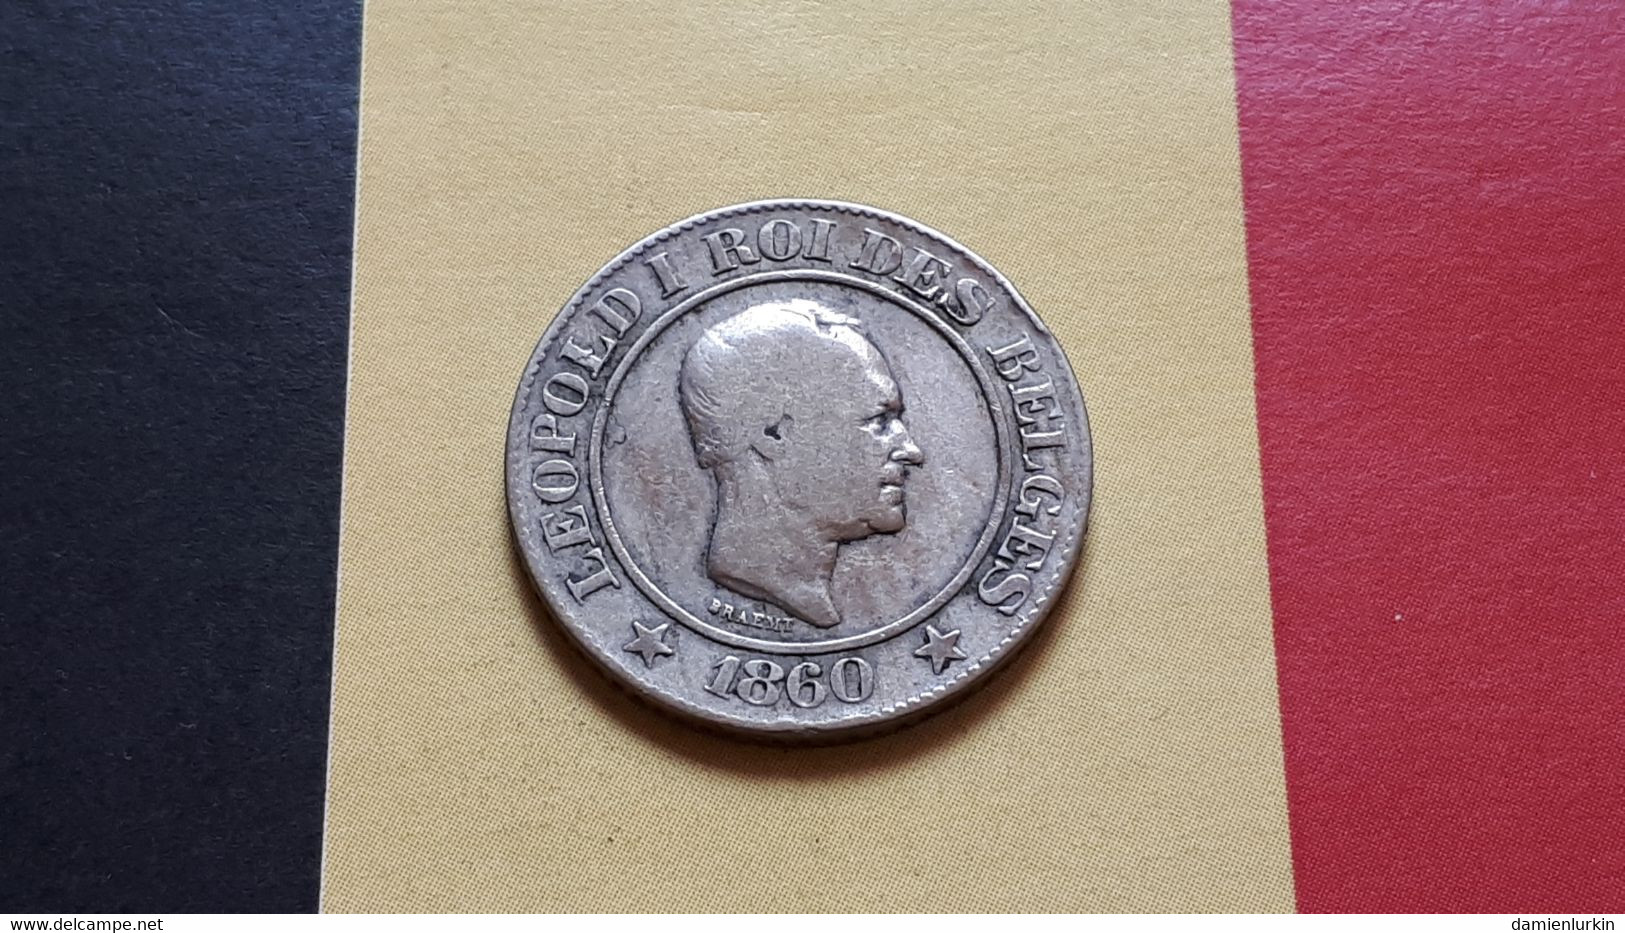 BELGIQUE LEOPOLD IER 20 CENTIMES 1860 (CONSIDEREE COMME ESSAI) - 20 Centimes